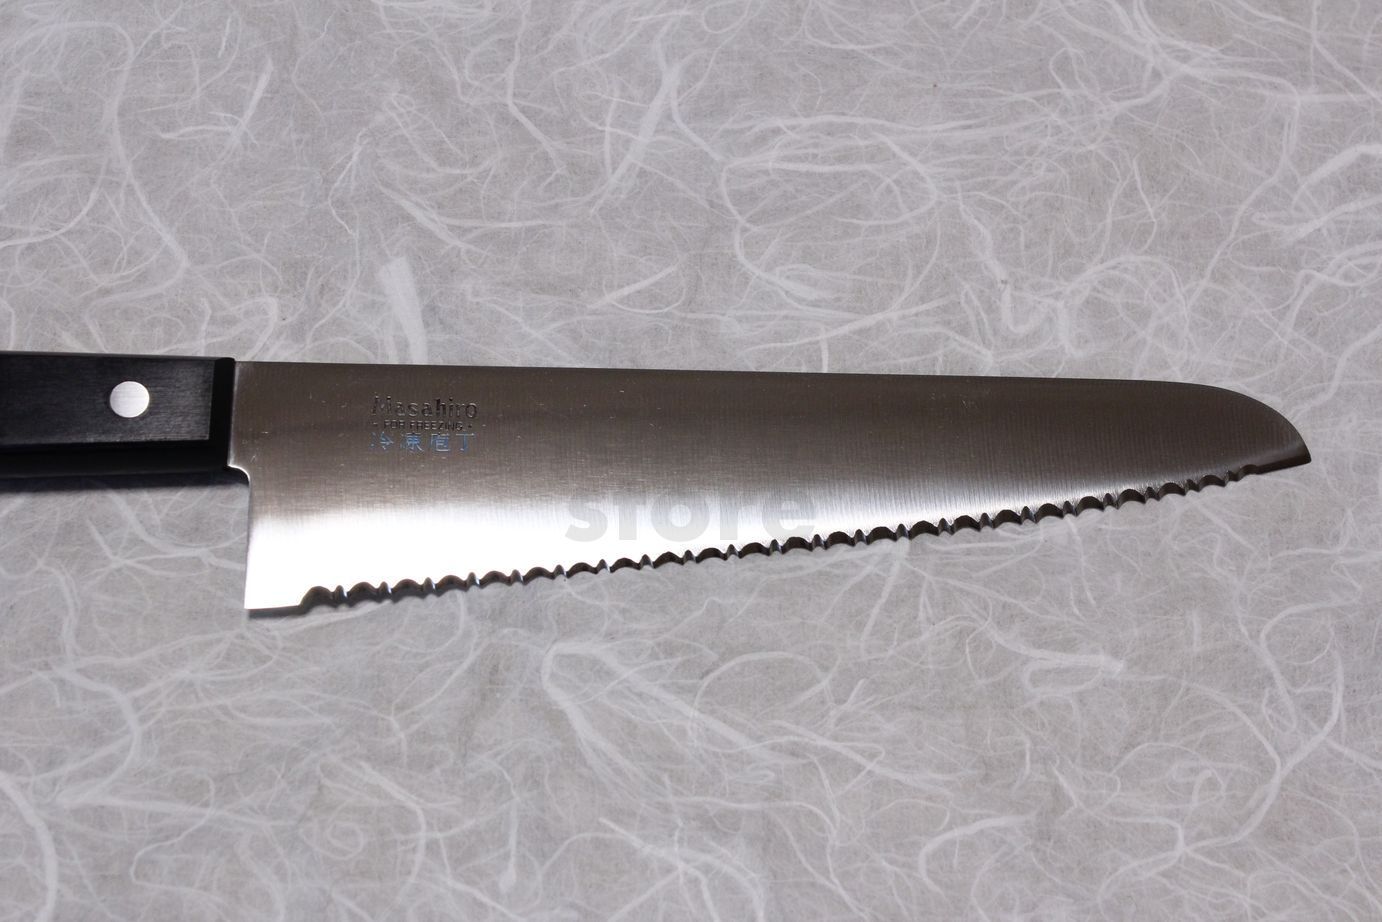 Masahiro Japanese Steel Frozen Food Knife 13046 - Globalkitchen Japan